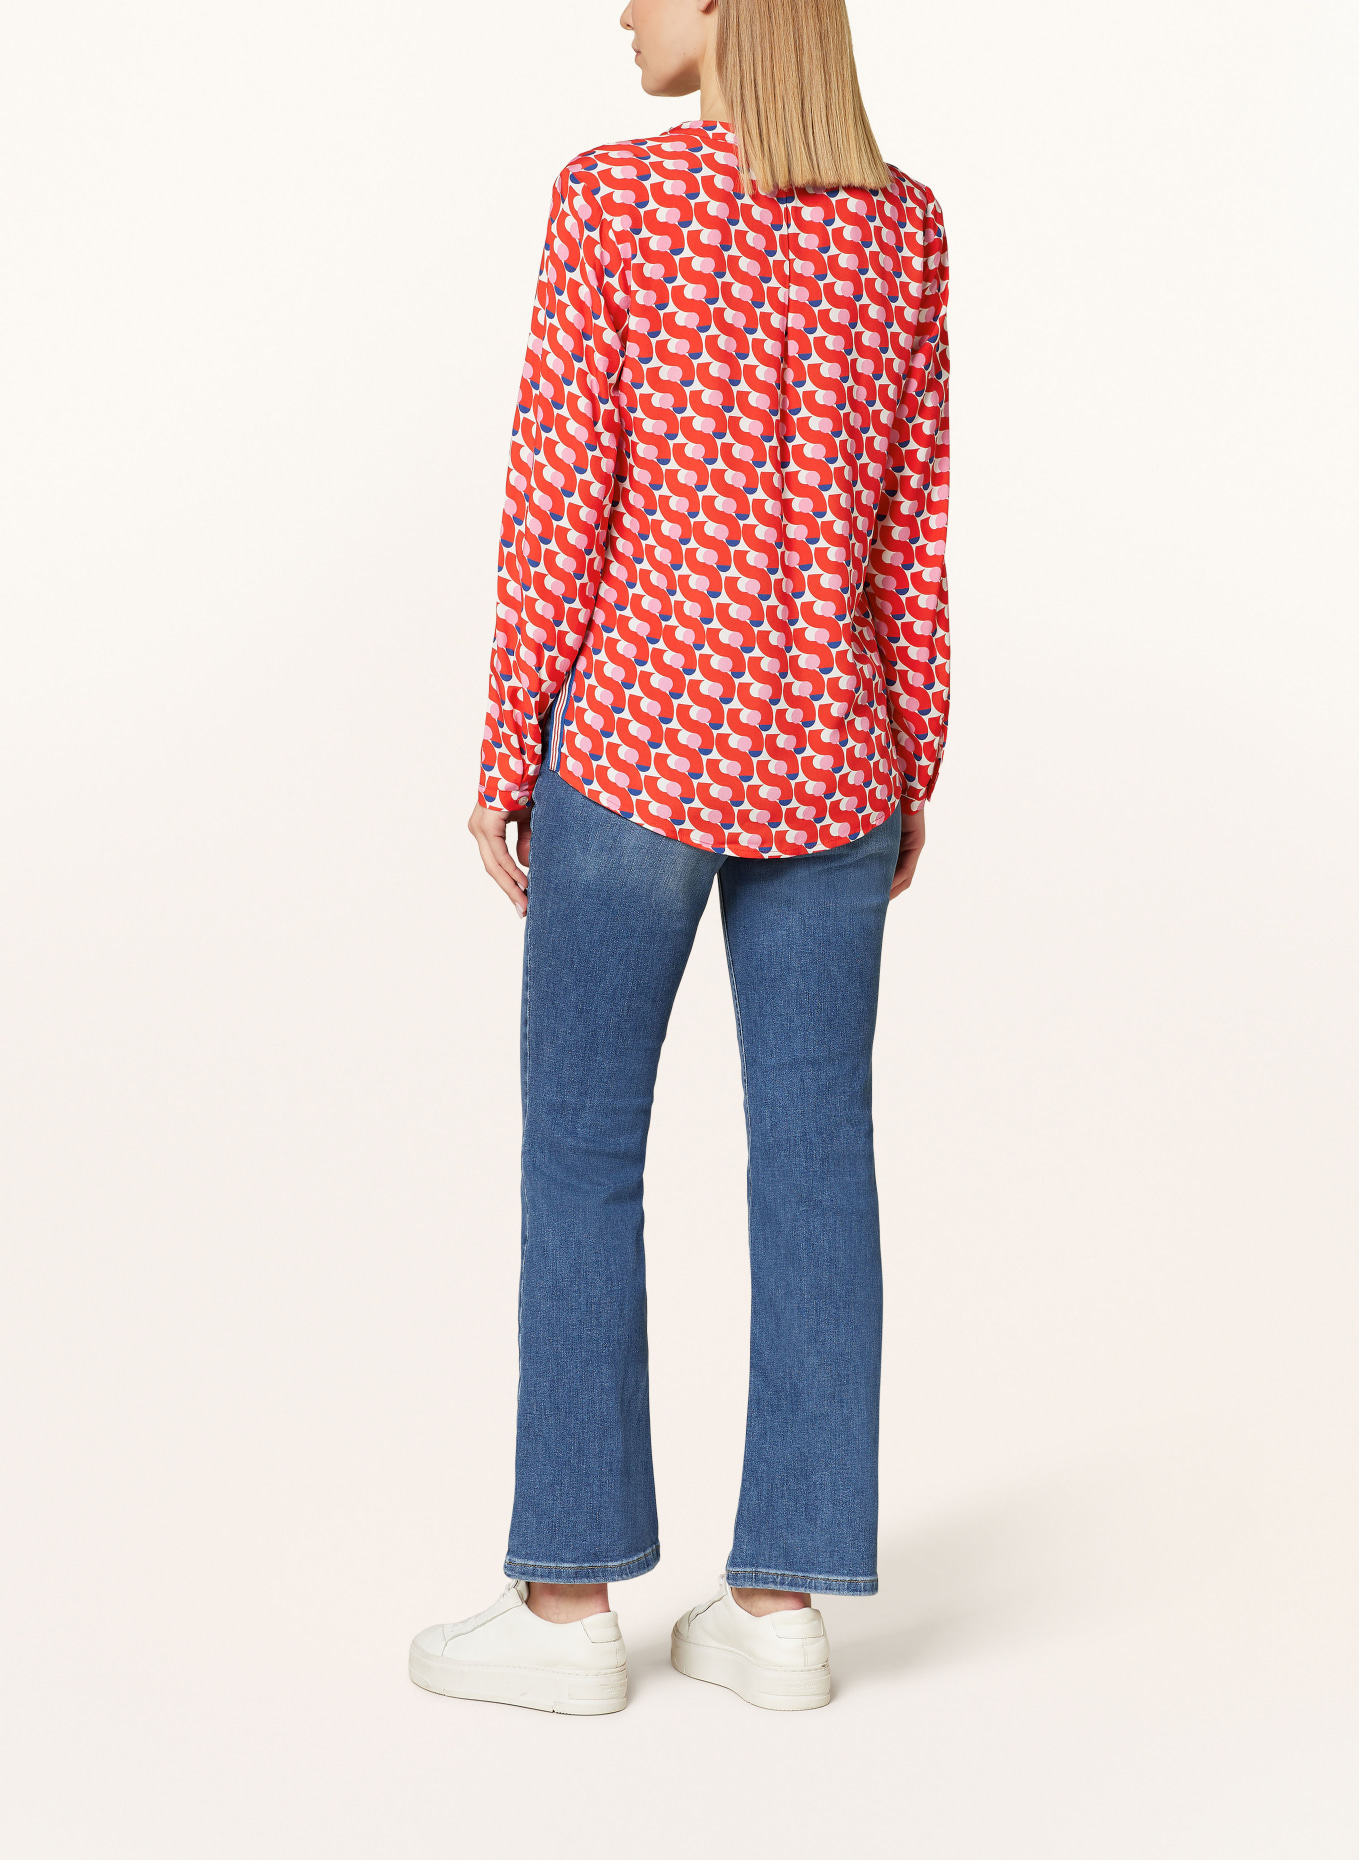 Emily VAN DEN BERGH Shirt blouse, Color: RED/ PINK/ BLUE (Image 3)